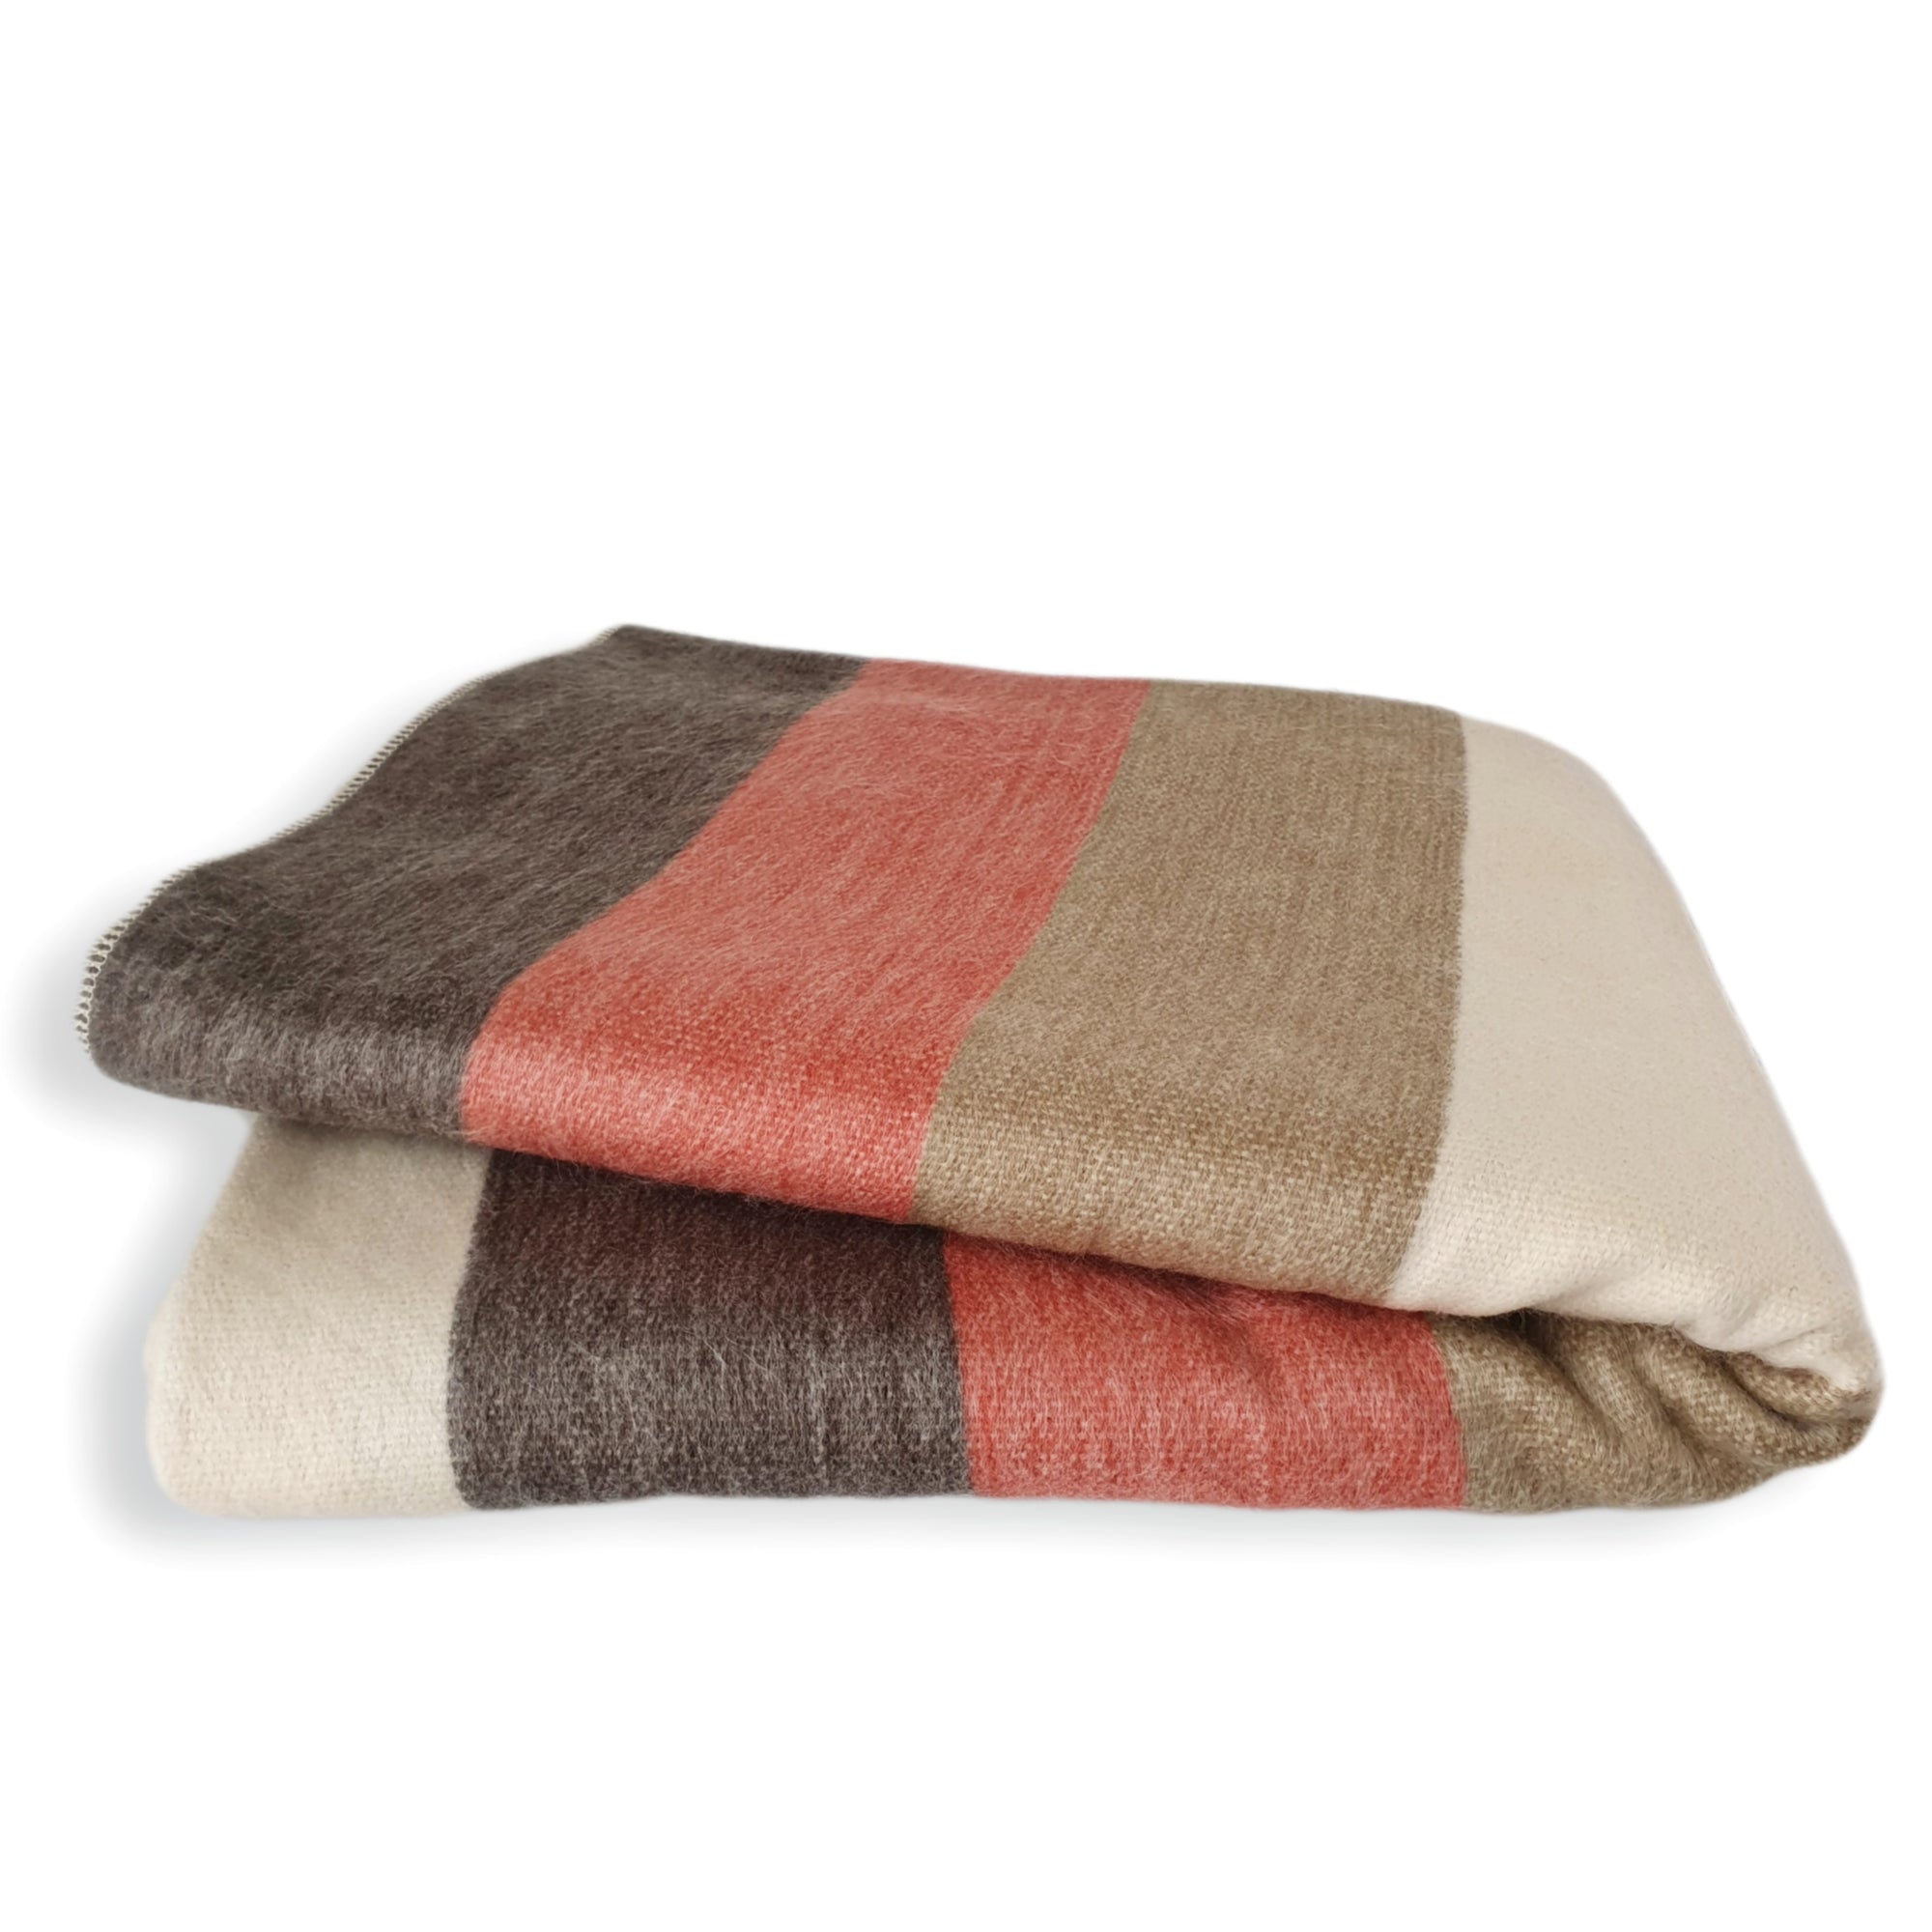 Guayaquil - baby Alpaca wool throw blanket - Handmade blanket - Sofa cover - Queen Size Blanket